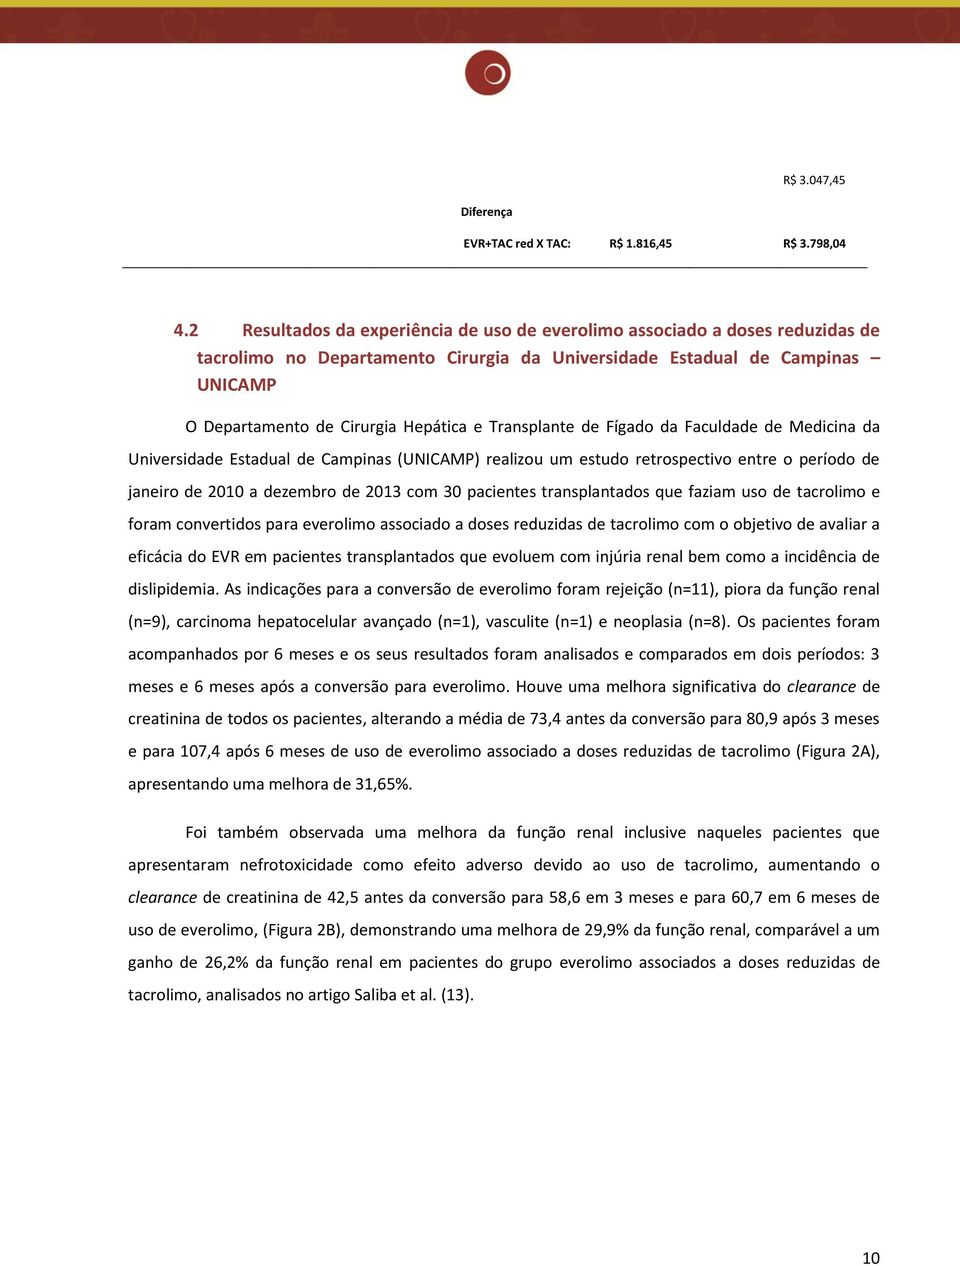 Transplante de Fígado da Faculdade de Medicina da Universidade Estadual de Campinas (UNICAMP) realizou um estudo retrospectivo entre o período de janeiro de 2010 a dezembro de 2013 com 30 pacientes